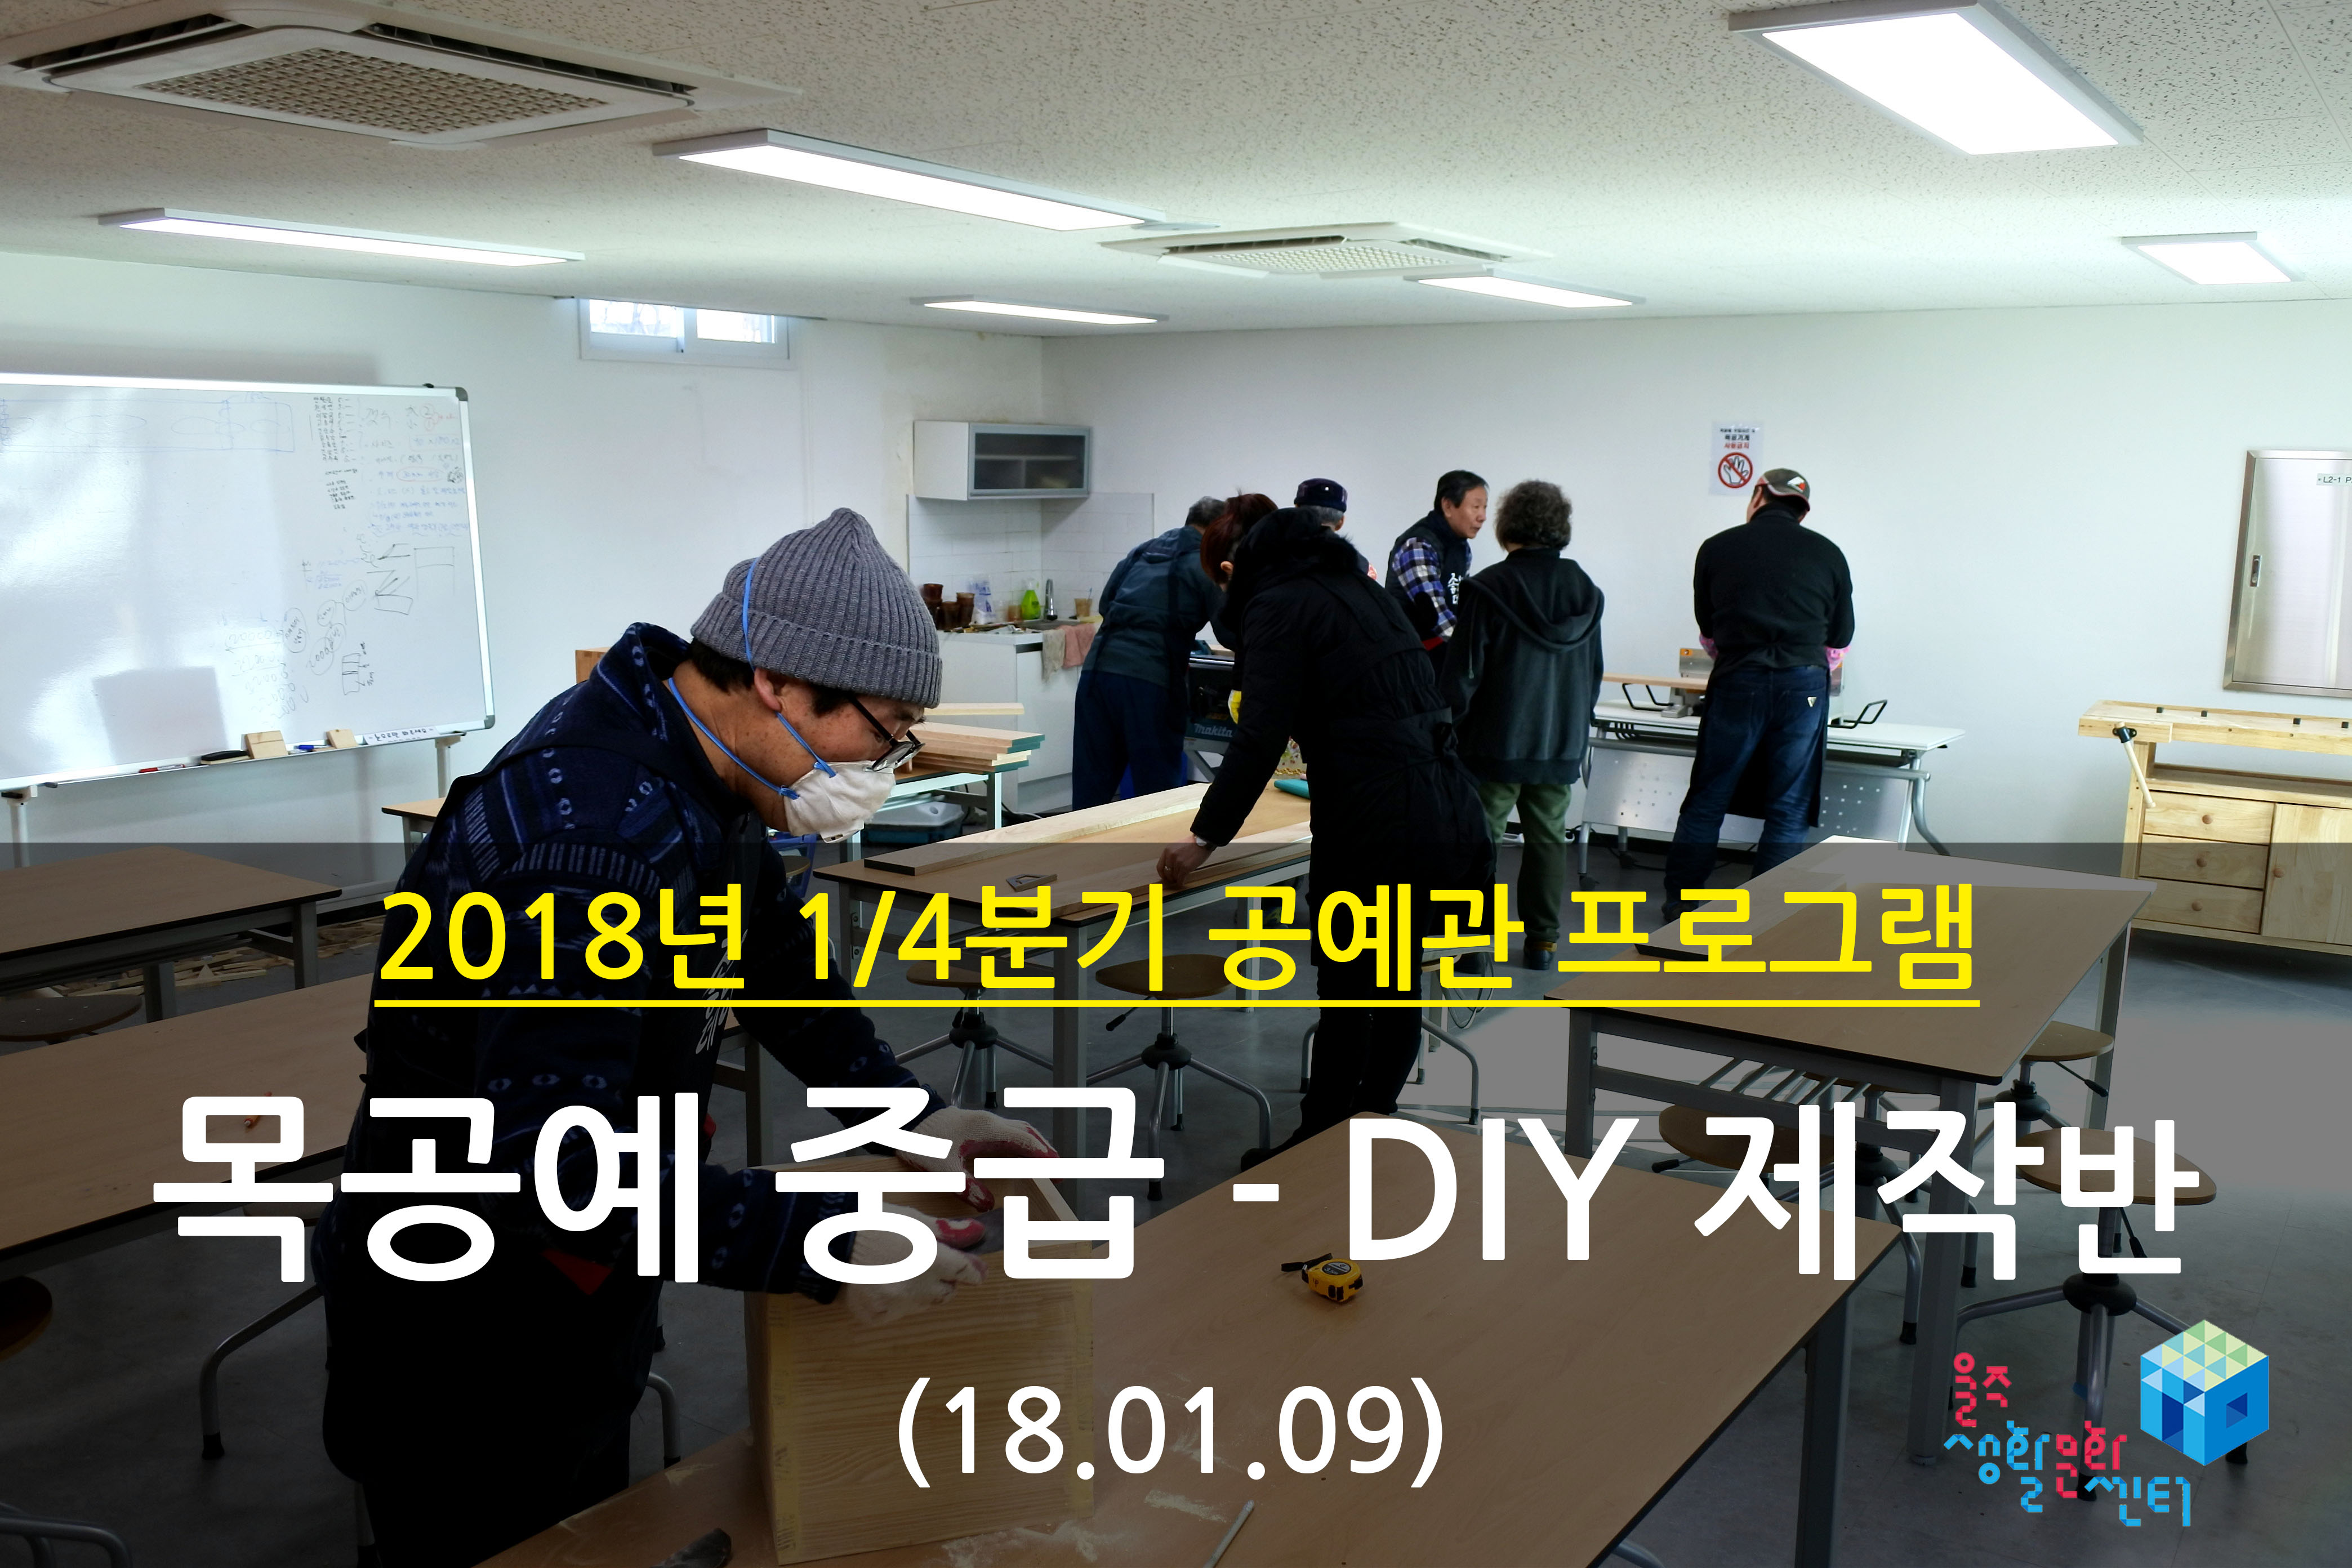 2018.01.09 _ 목공예 중급 - DIY 제작반 _ 1/4분기 1주차 수업